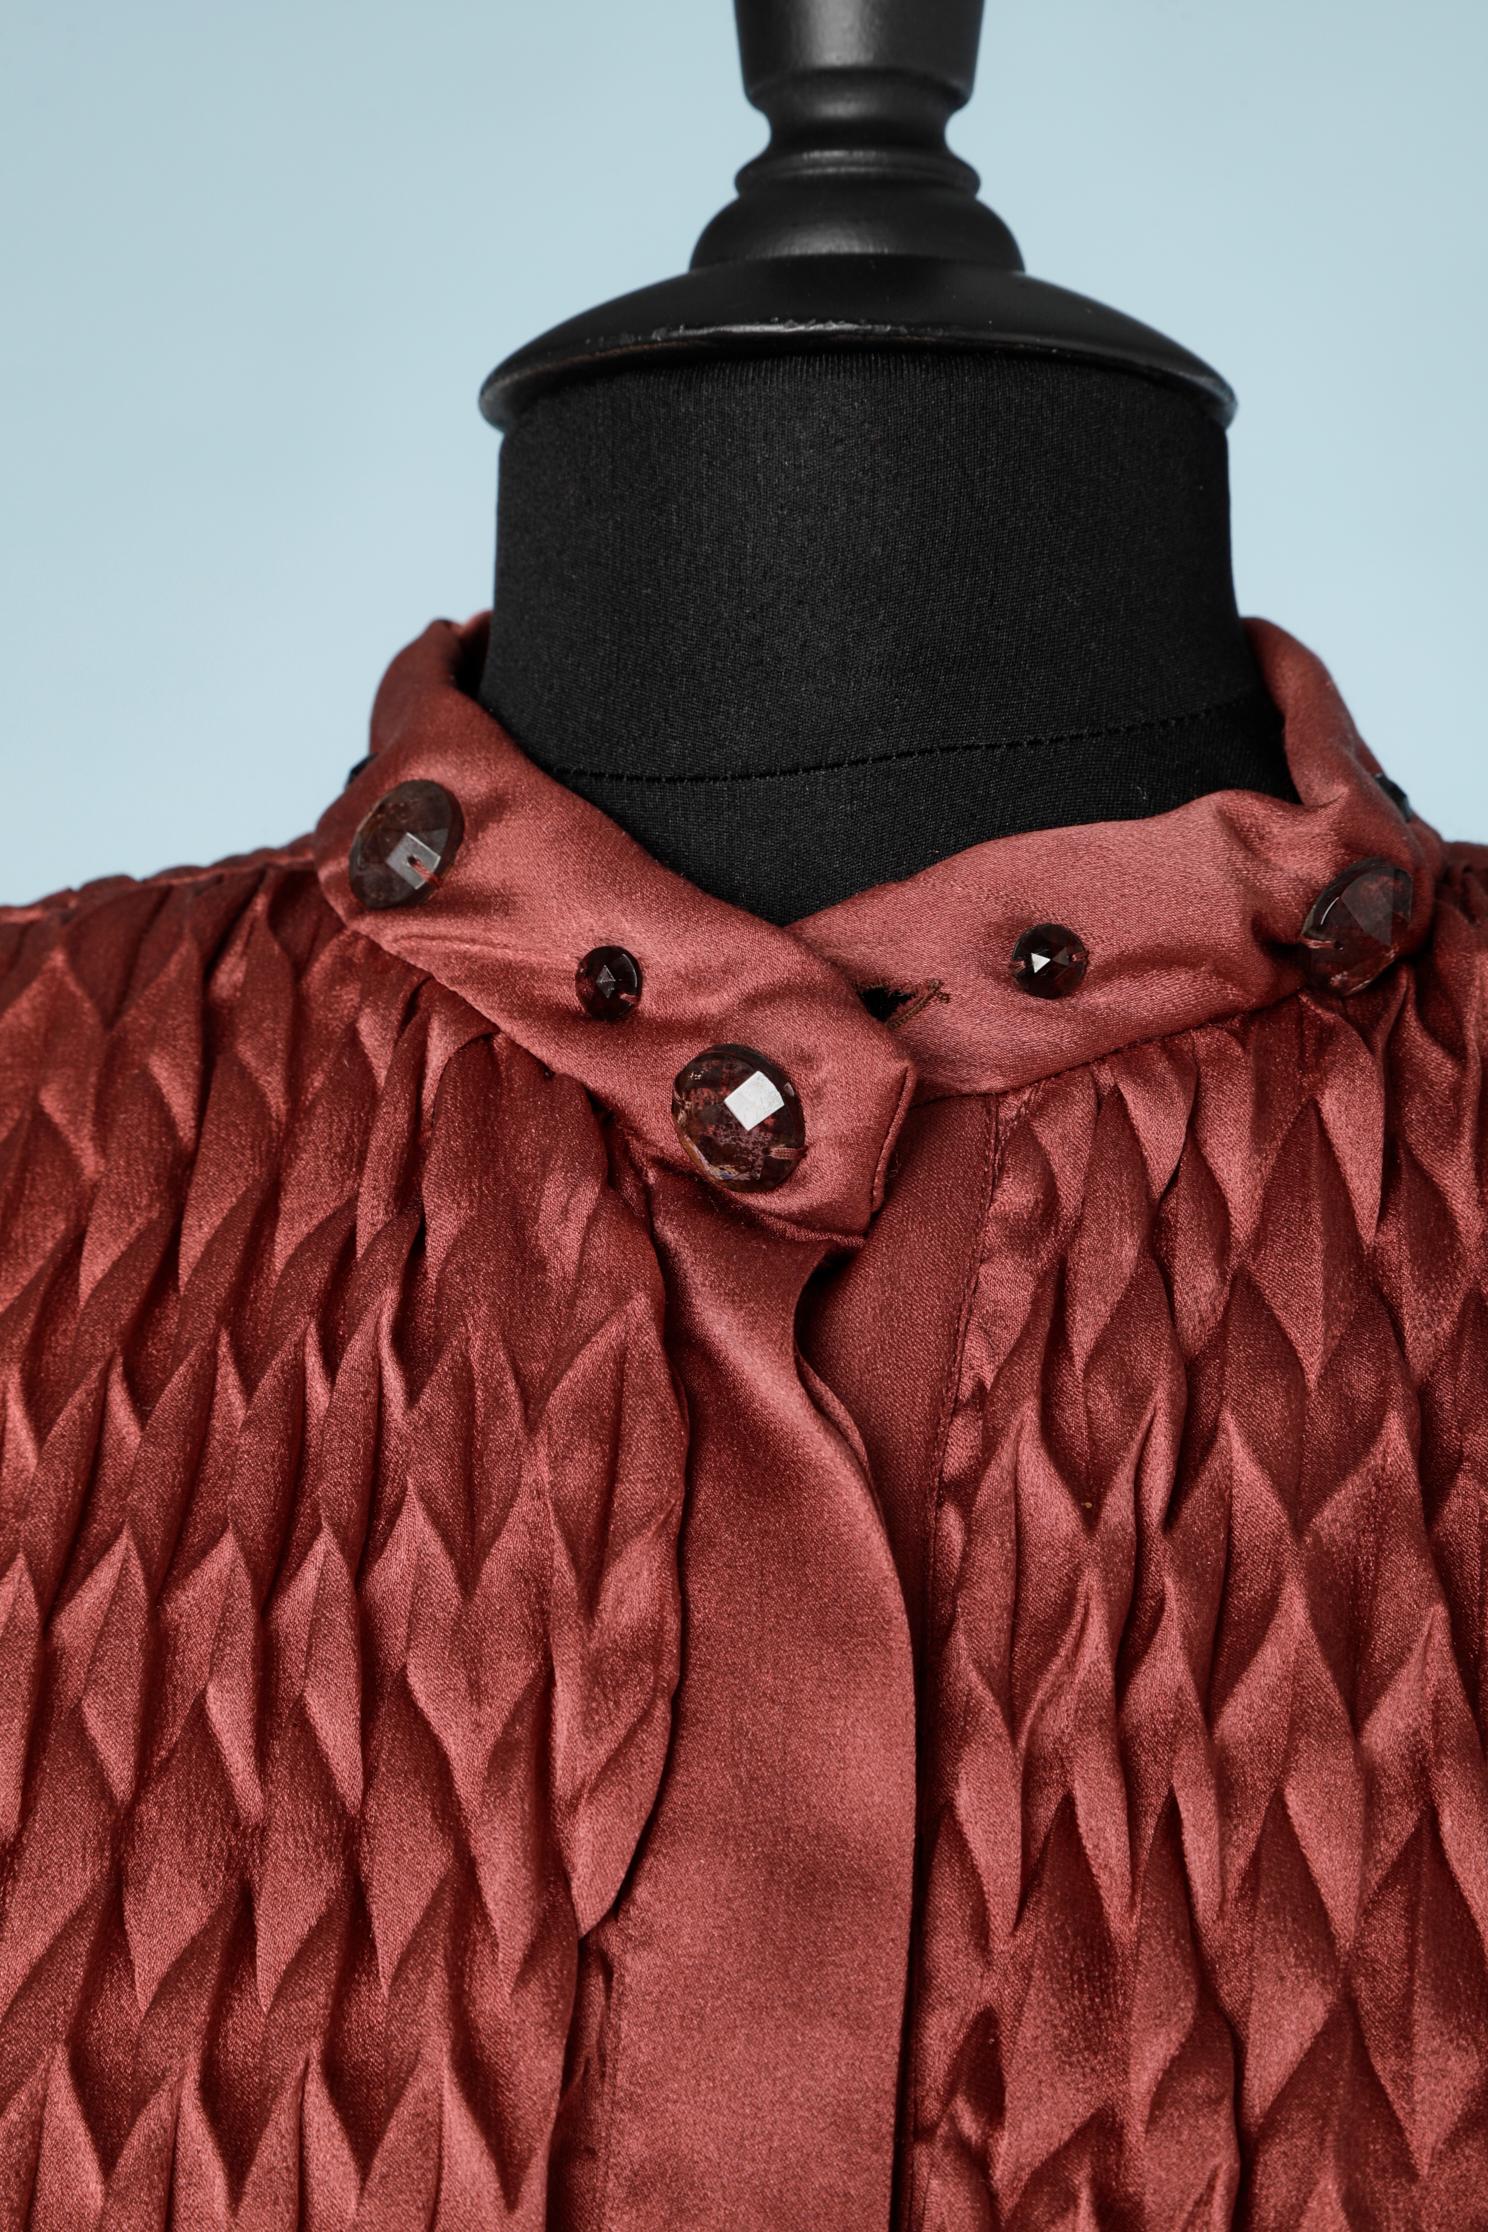 Veste plissée origami en soie palissandre perlée avec cabochons en verre. Col, poignets et ceinture matelassés.
TAILLE M 